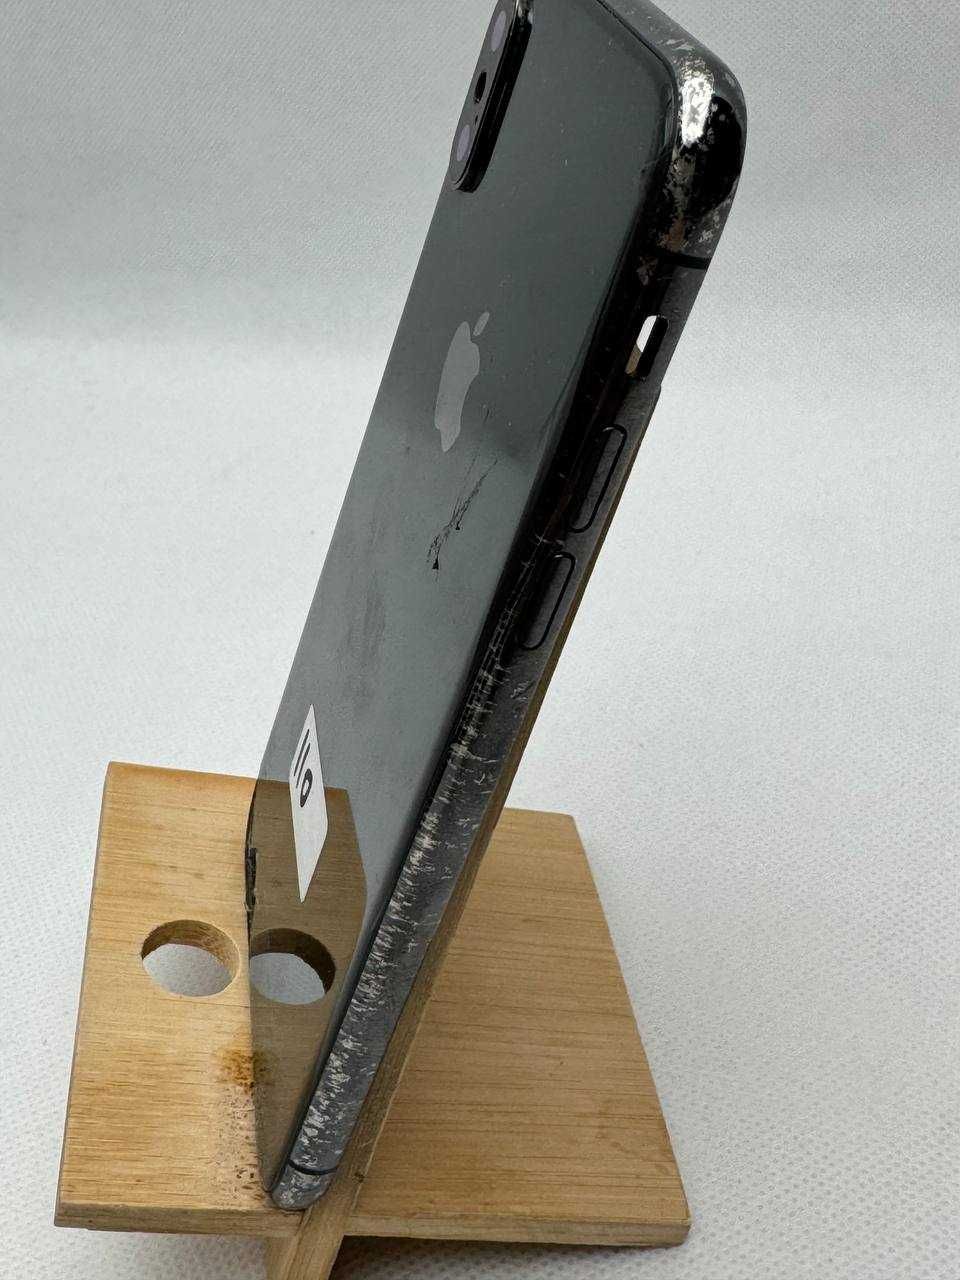 Oryginalny korpus obudowa Apple iPhone X